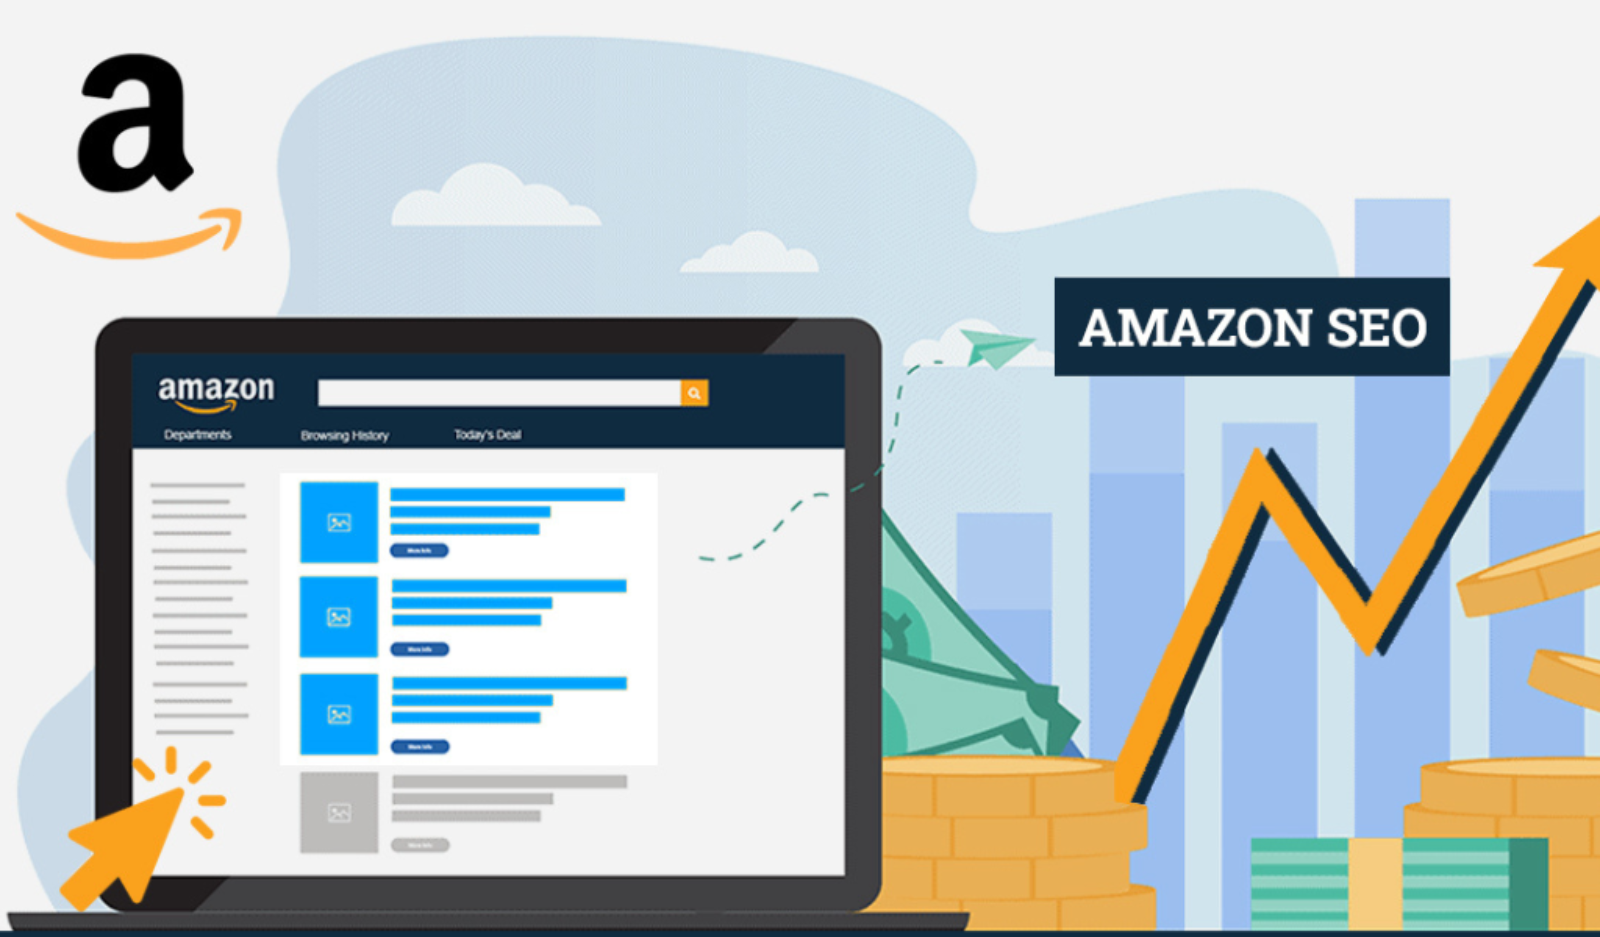 How to rank well on Amazon? Performing SEO on Amazon